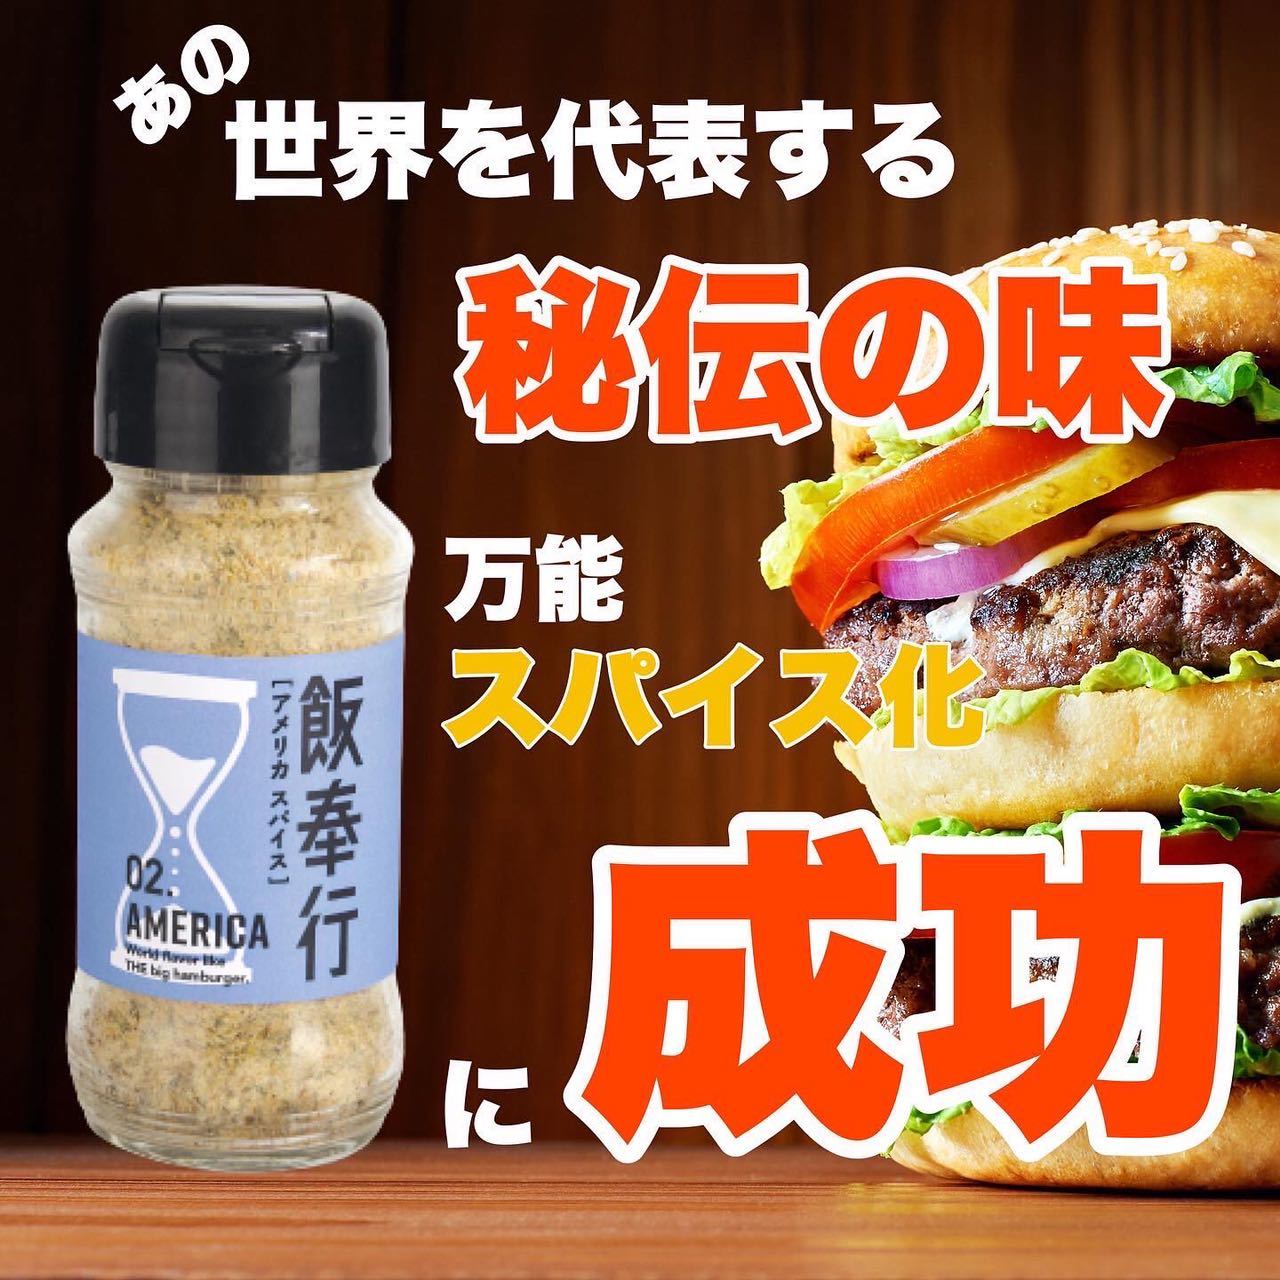 ハンバーガーの「あの味」を再現できる
“Americaスパイス”を10月22日までMakuakeにて販売